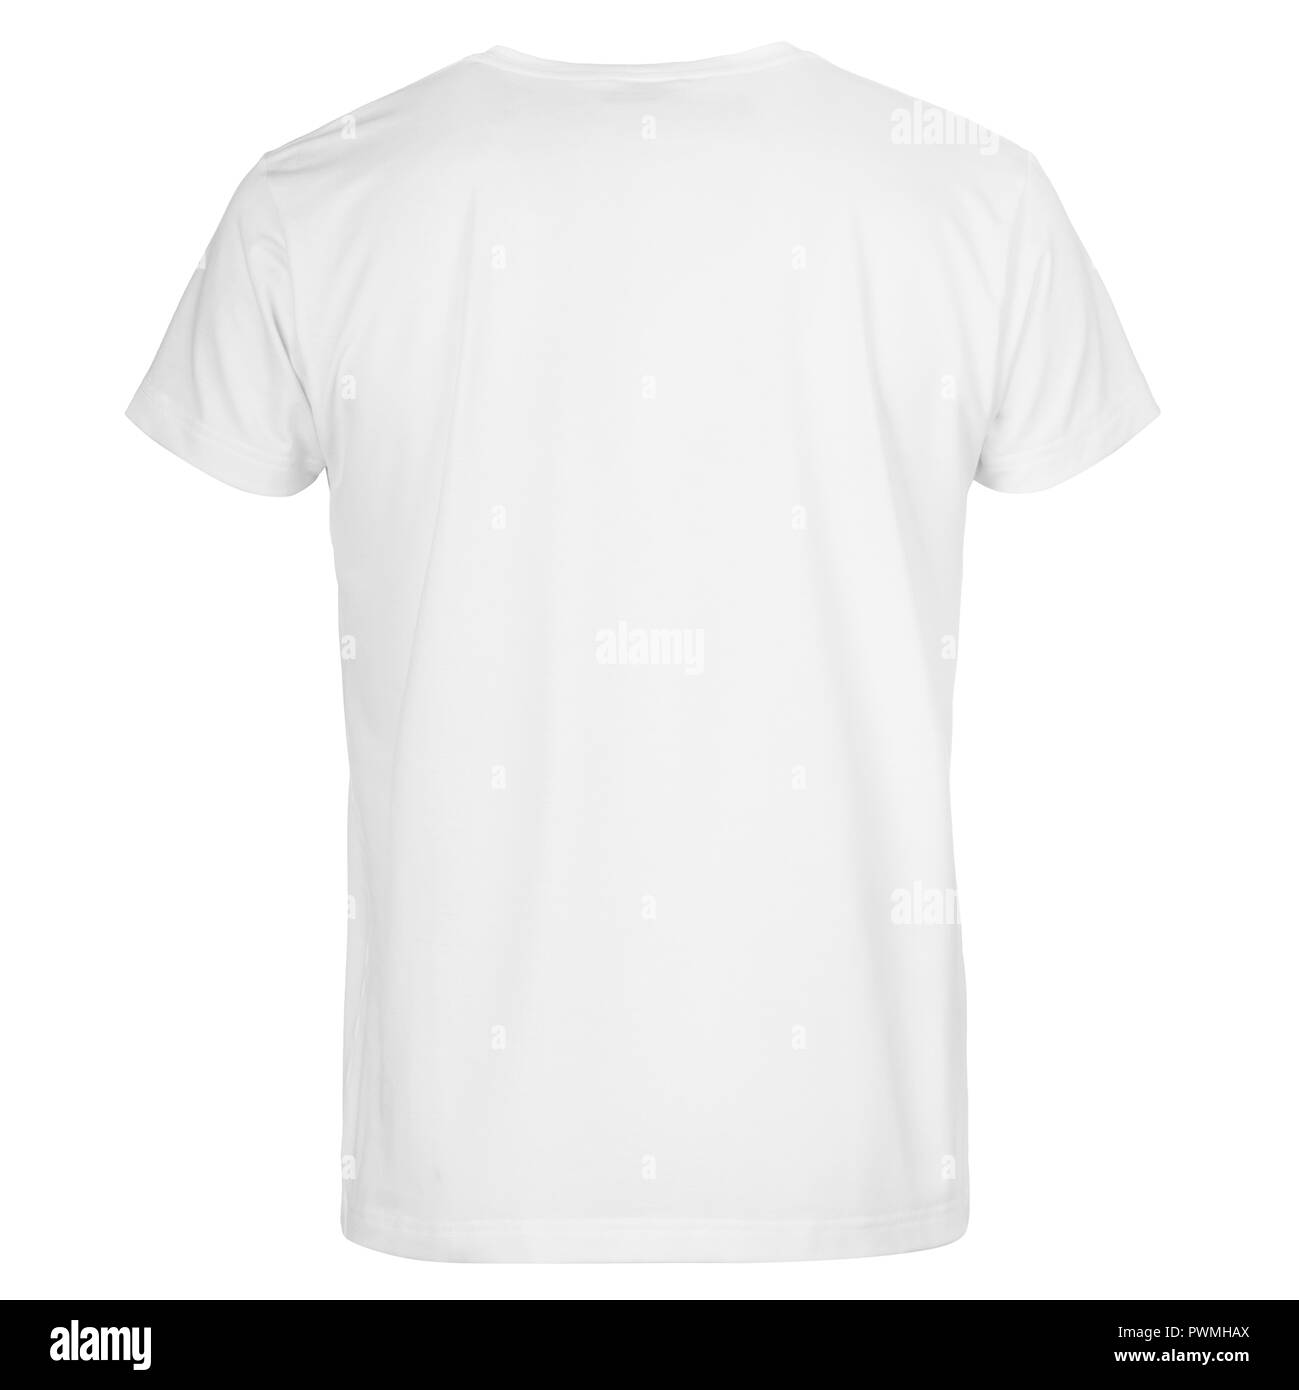 Gli uomini di taglio t-shirt isolati su sfondo bianco Foto Stock